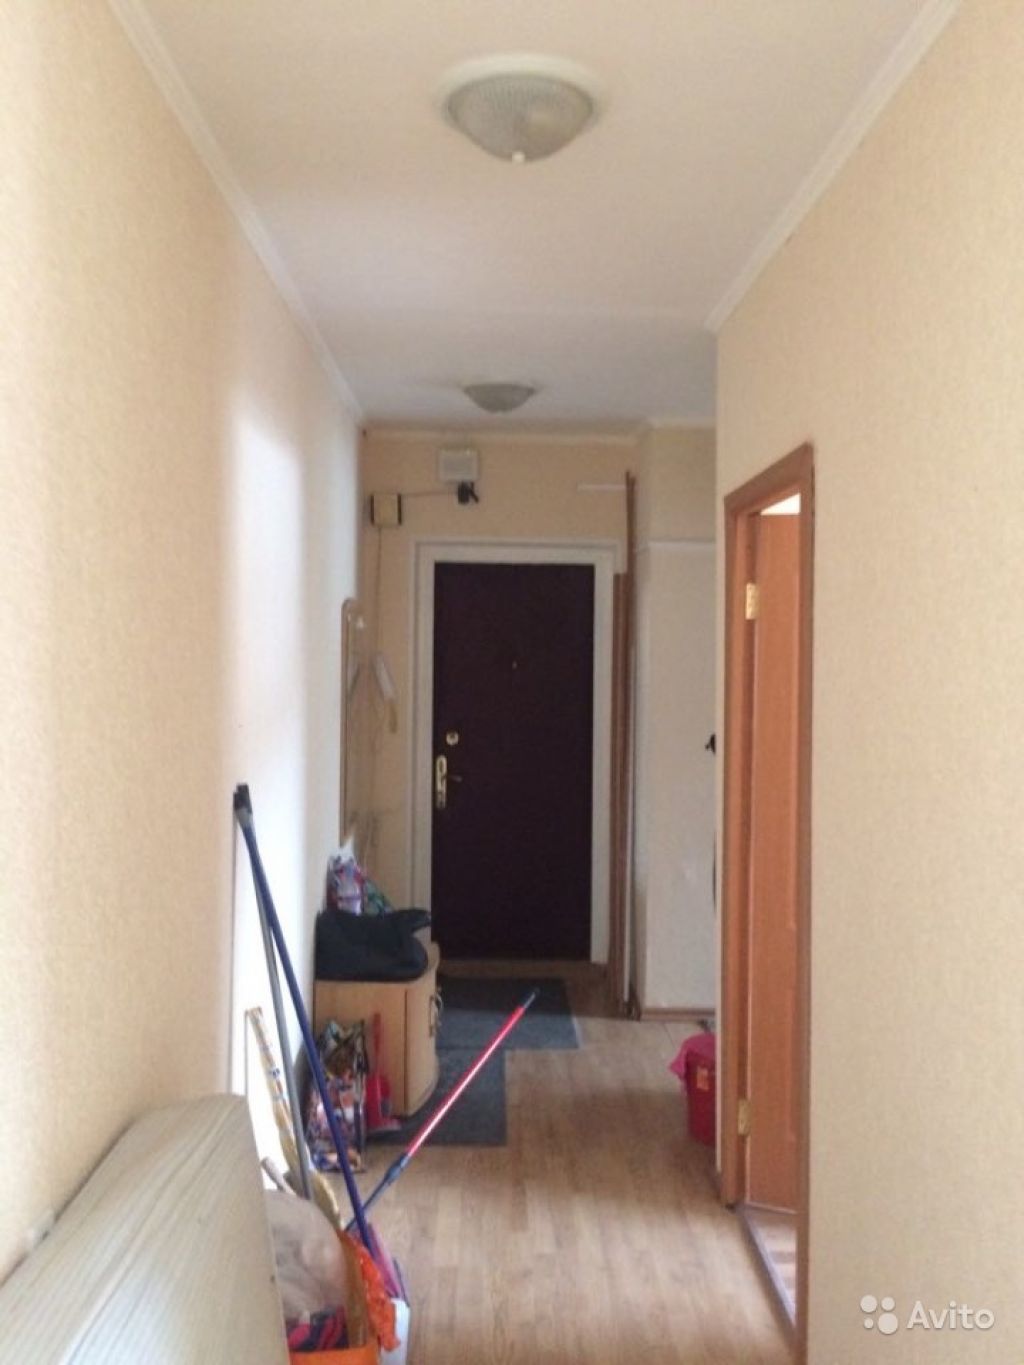 Сдам квартиру 3-к квартира 80 м² на 2 этаже 9-этажного панельного дома в Москве. Фото 1